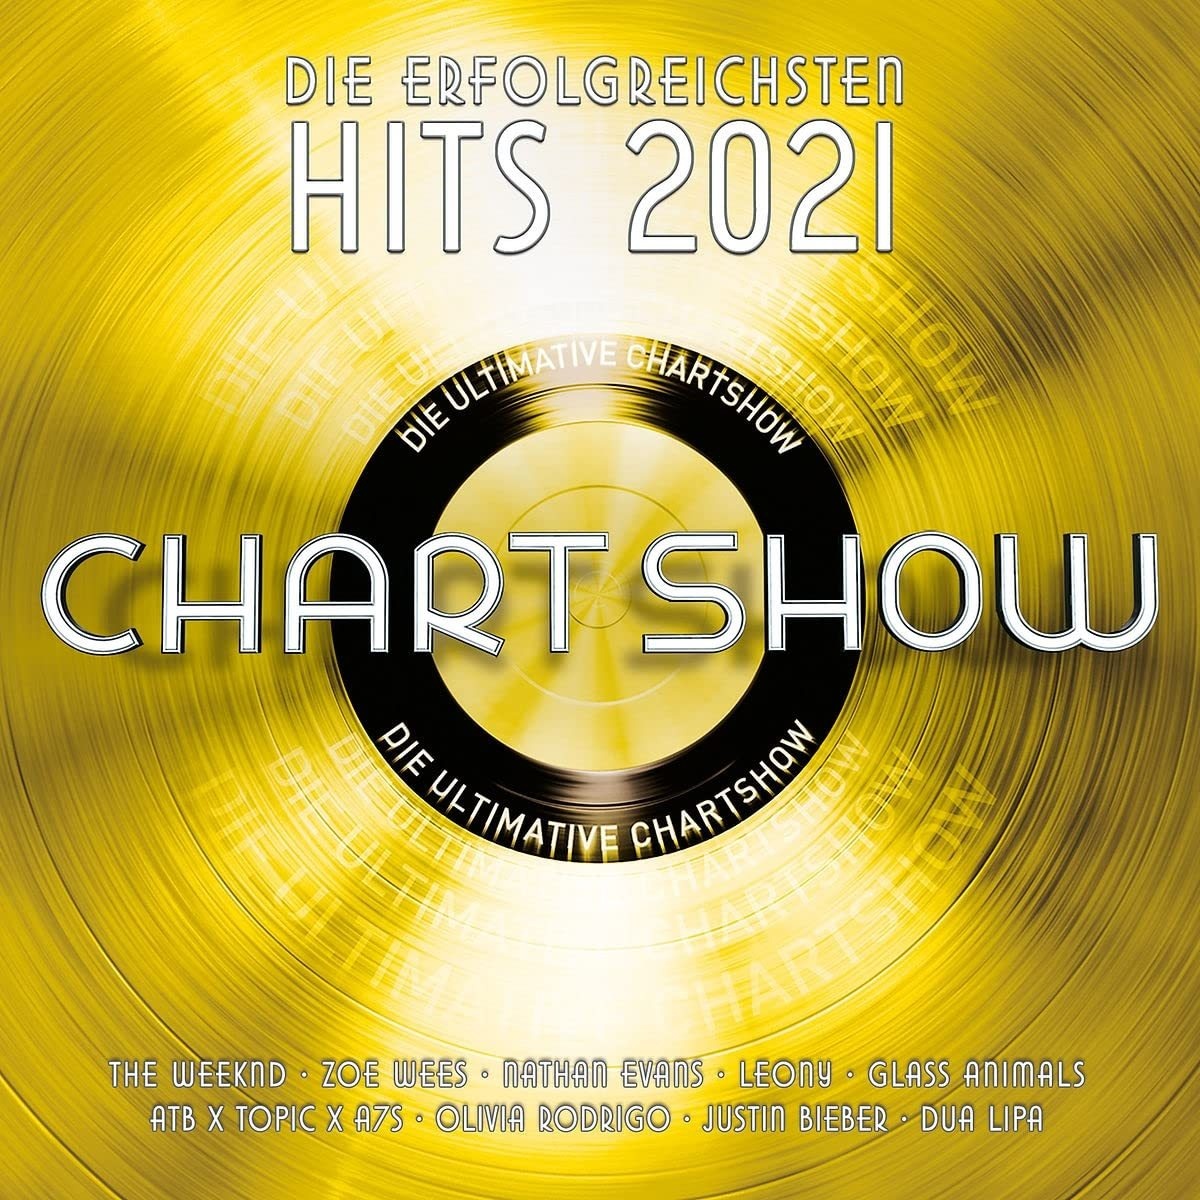 Die ultimative Chartshow - DIe erfolgreichsten Hits 2021 (2 CDs) - Various. (CD)